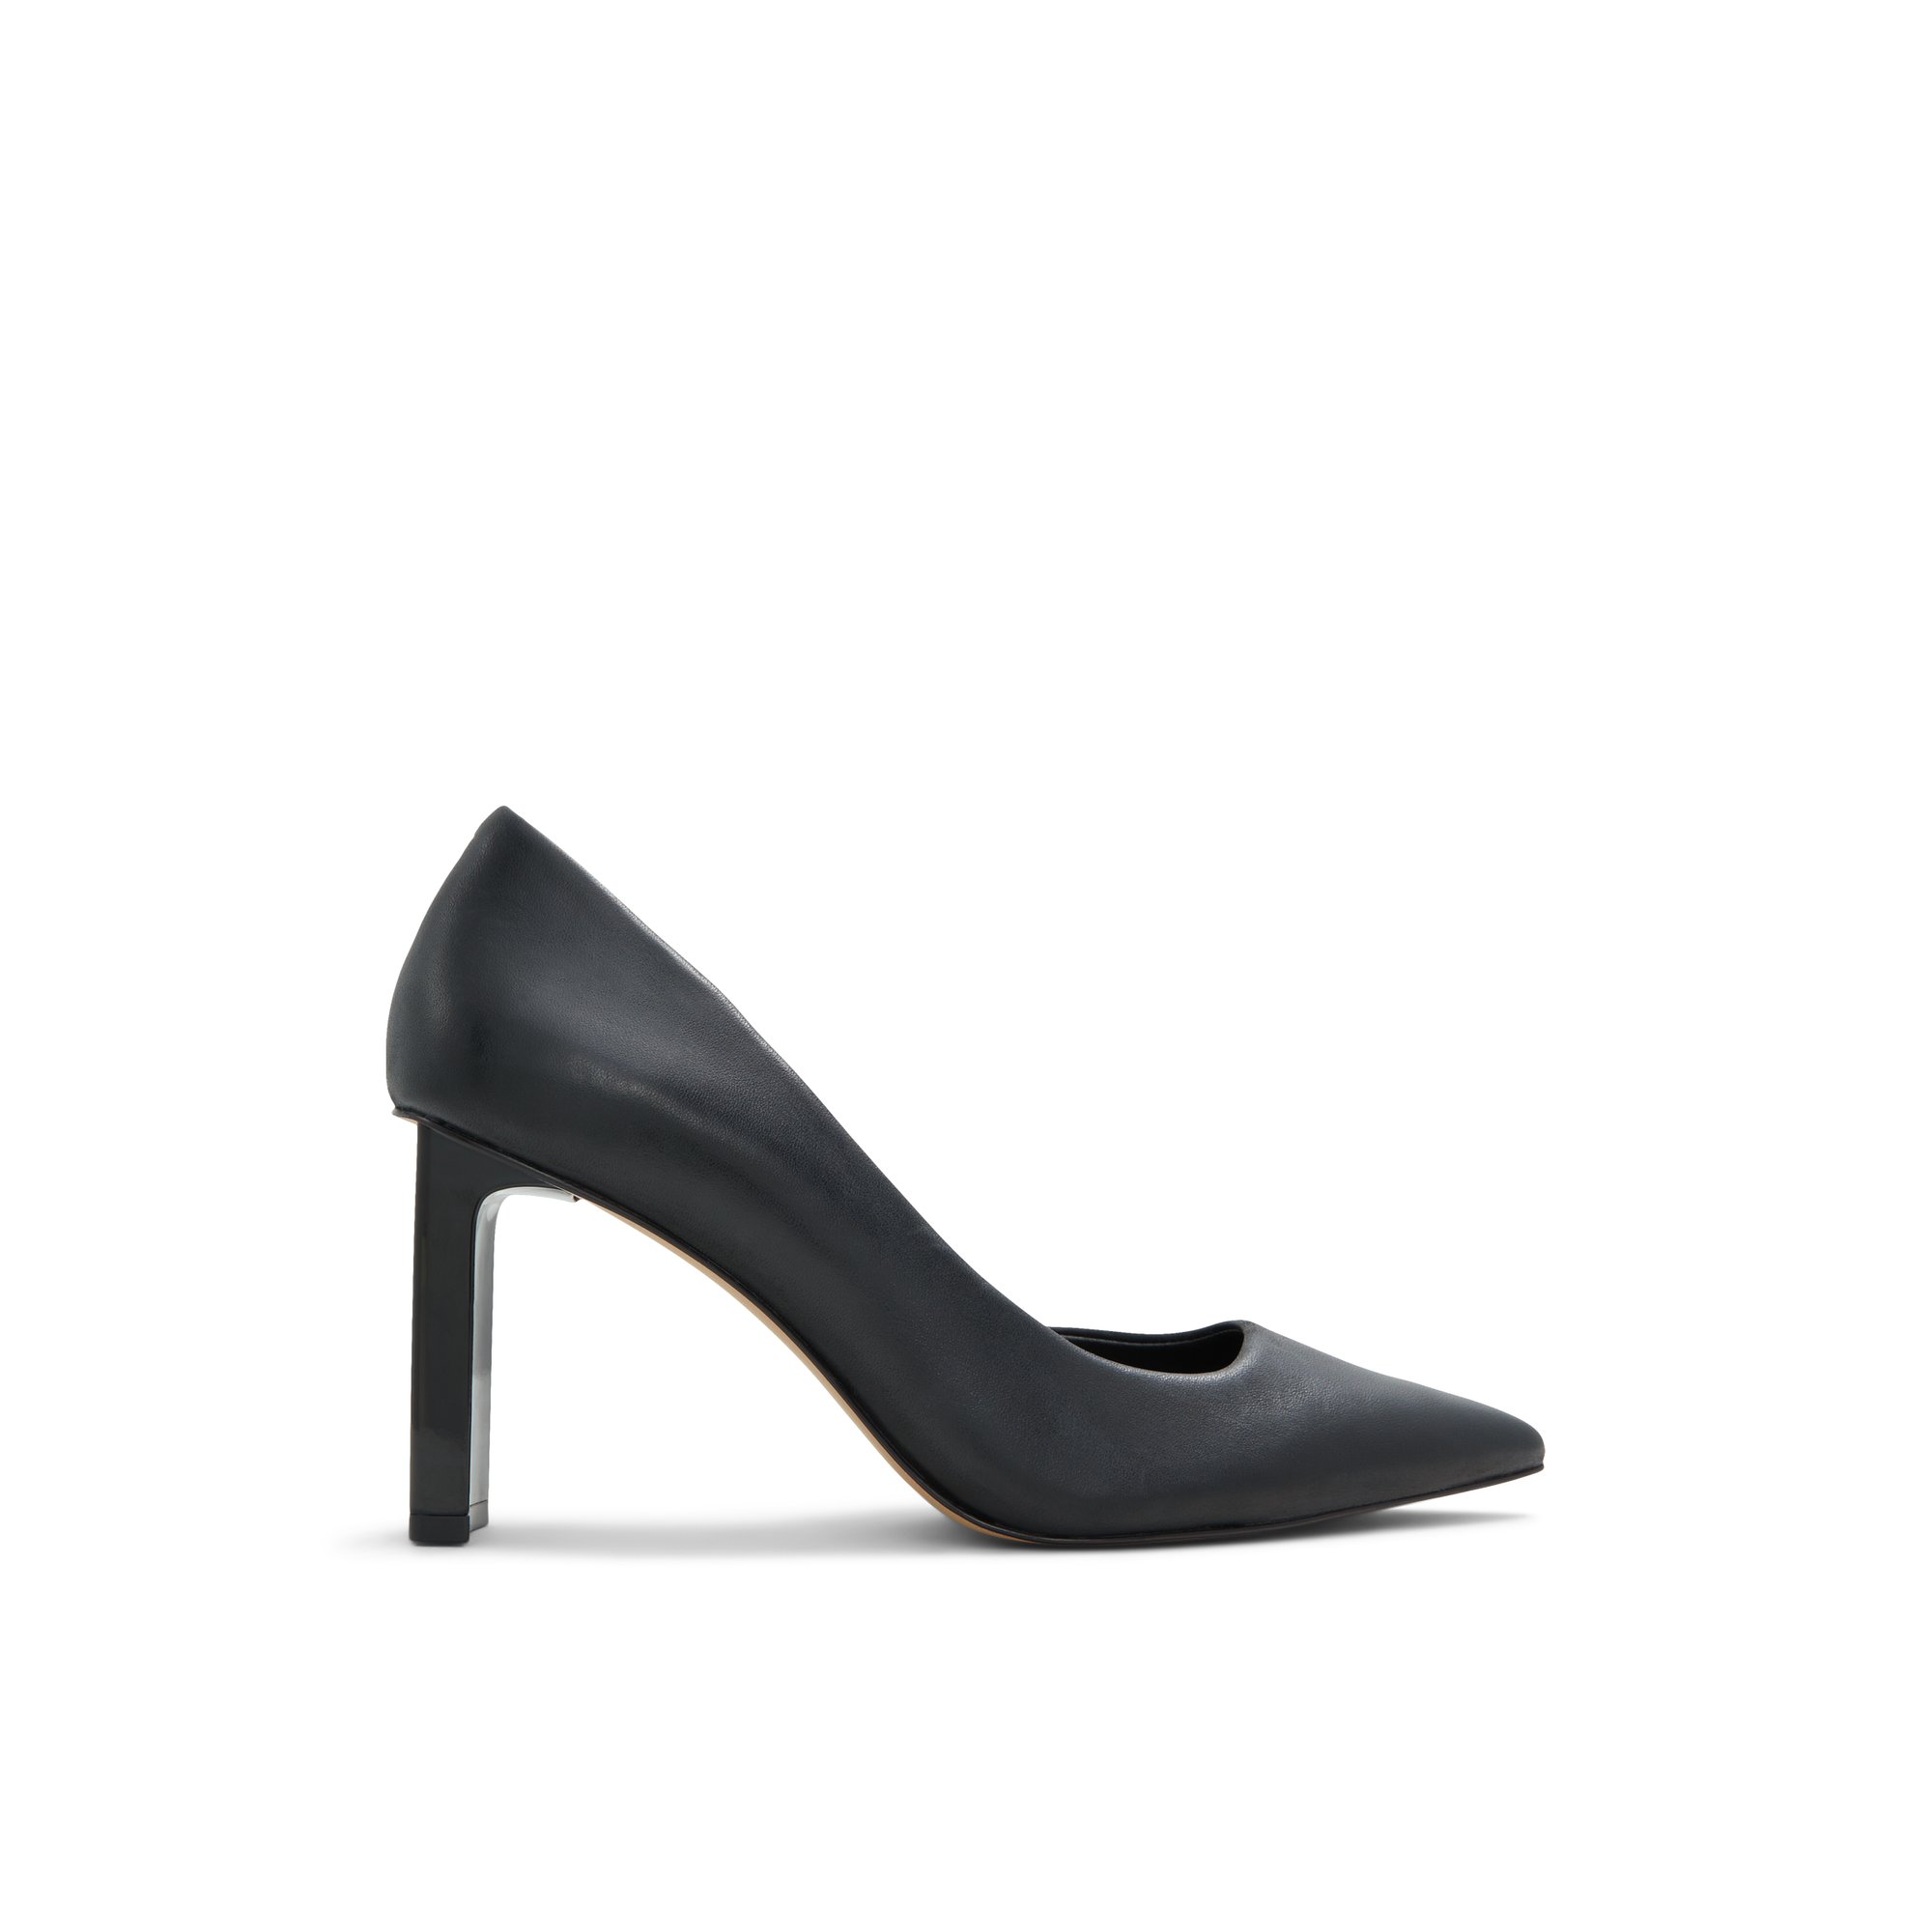 ALDO Ligowan - Women's Heels Pumps - Black